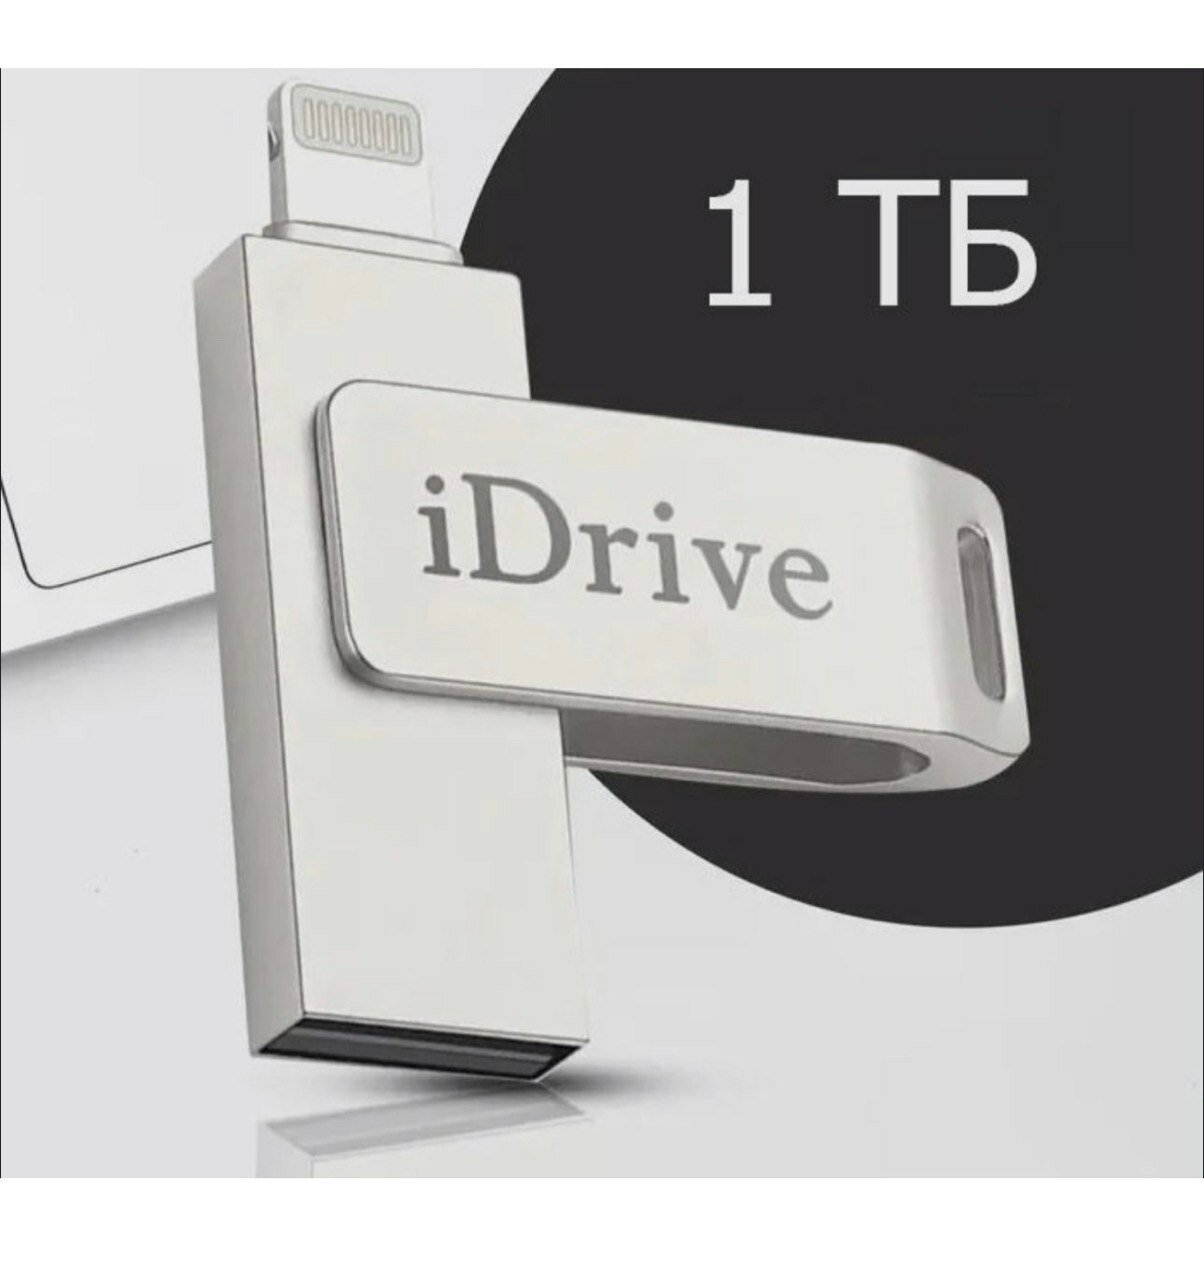 "idrive" USB-флеш-накопитель емкостью 1 ТБ для хранения и переноса фото и видео USB-флеш-накопитель / USB Флешка для телефона Apple iPhone и iPad / Флешка для Айфона и Айпада / USB Flash Drive 1 ТБ, серебристый